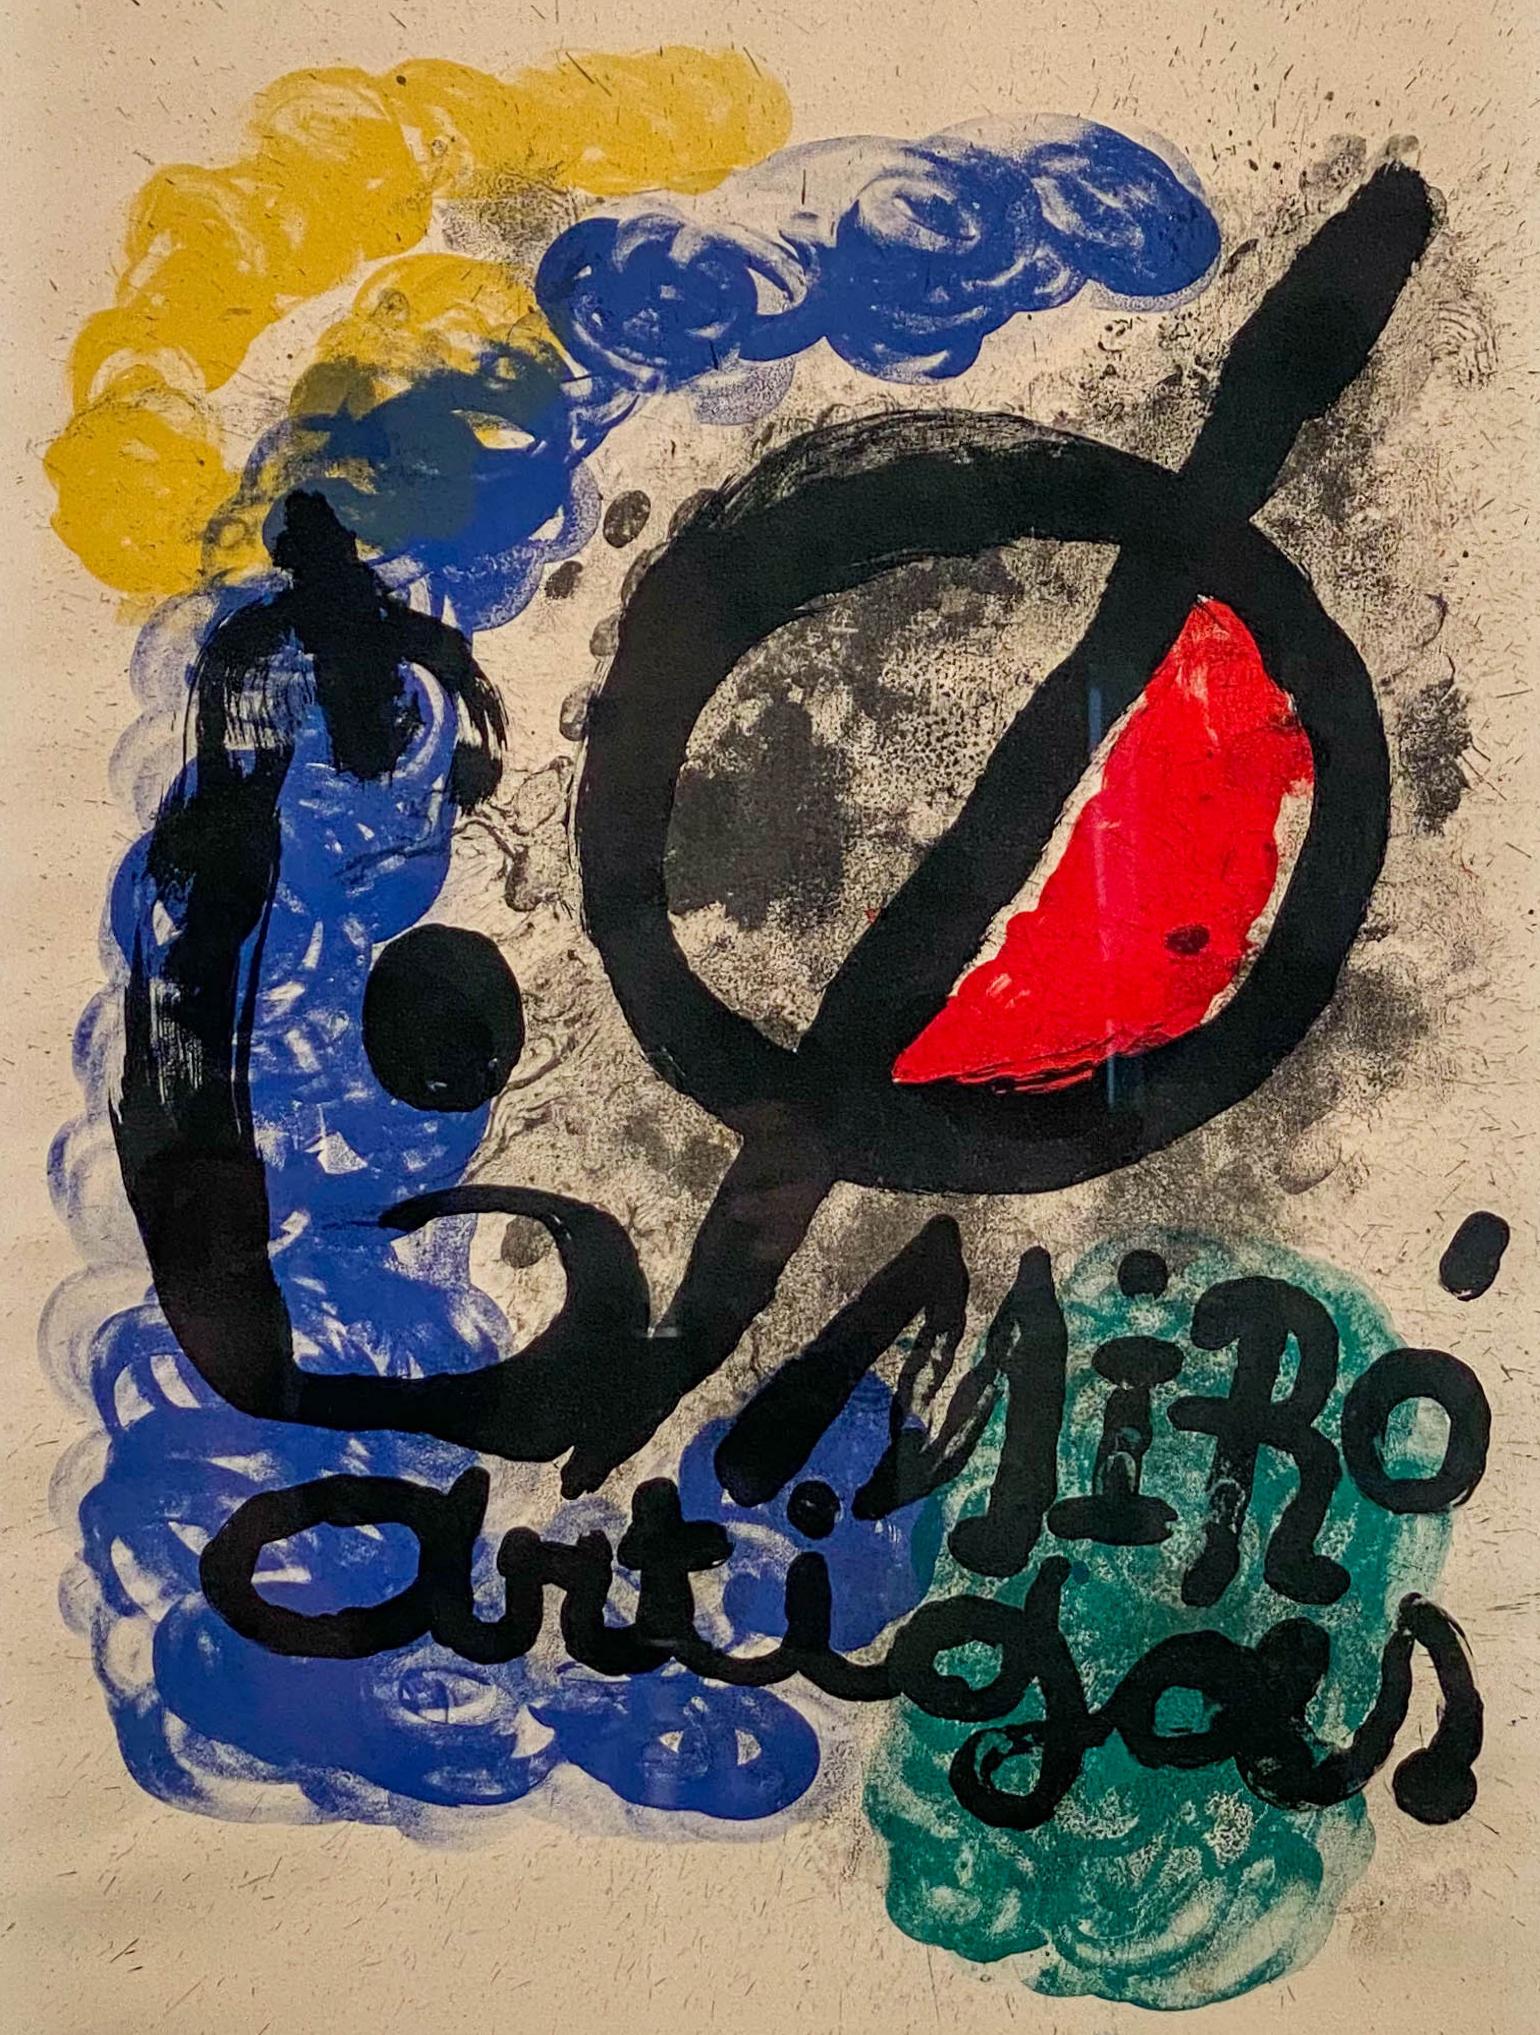 Joan Miro
Spanisch, 1893-1983
Affiche pour l'Exposition Miro-Artigas, 1963

Lithographie auf Rives-Papier
33